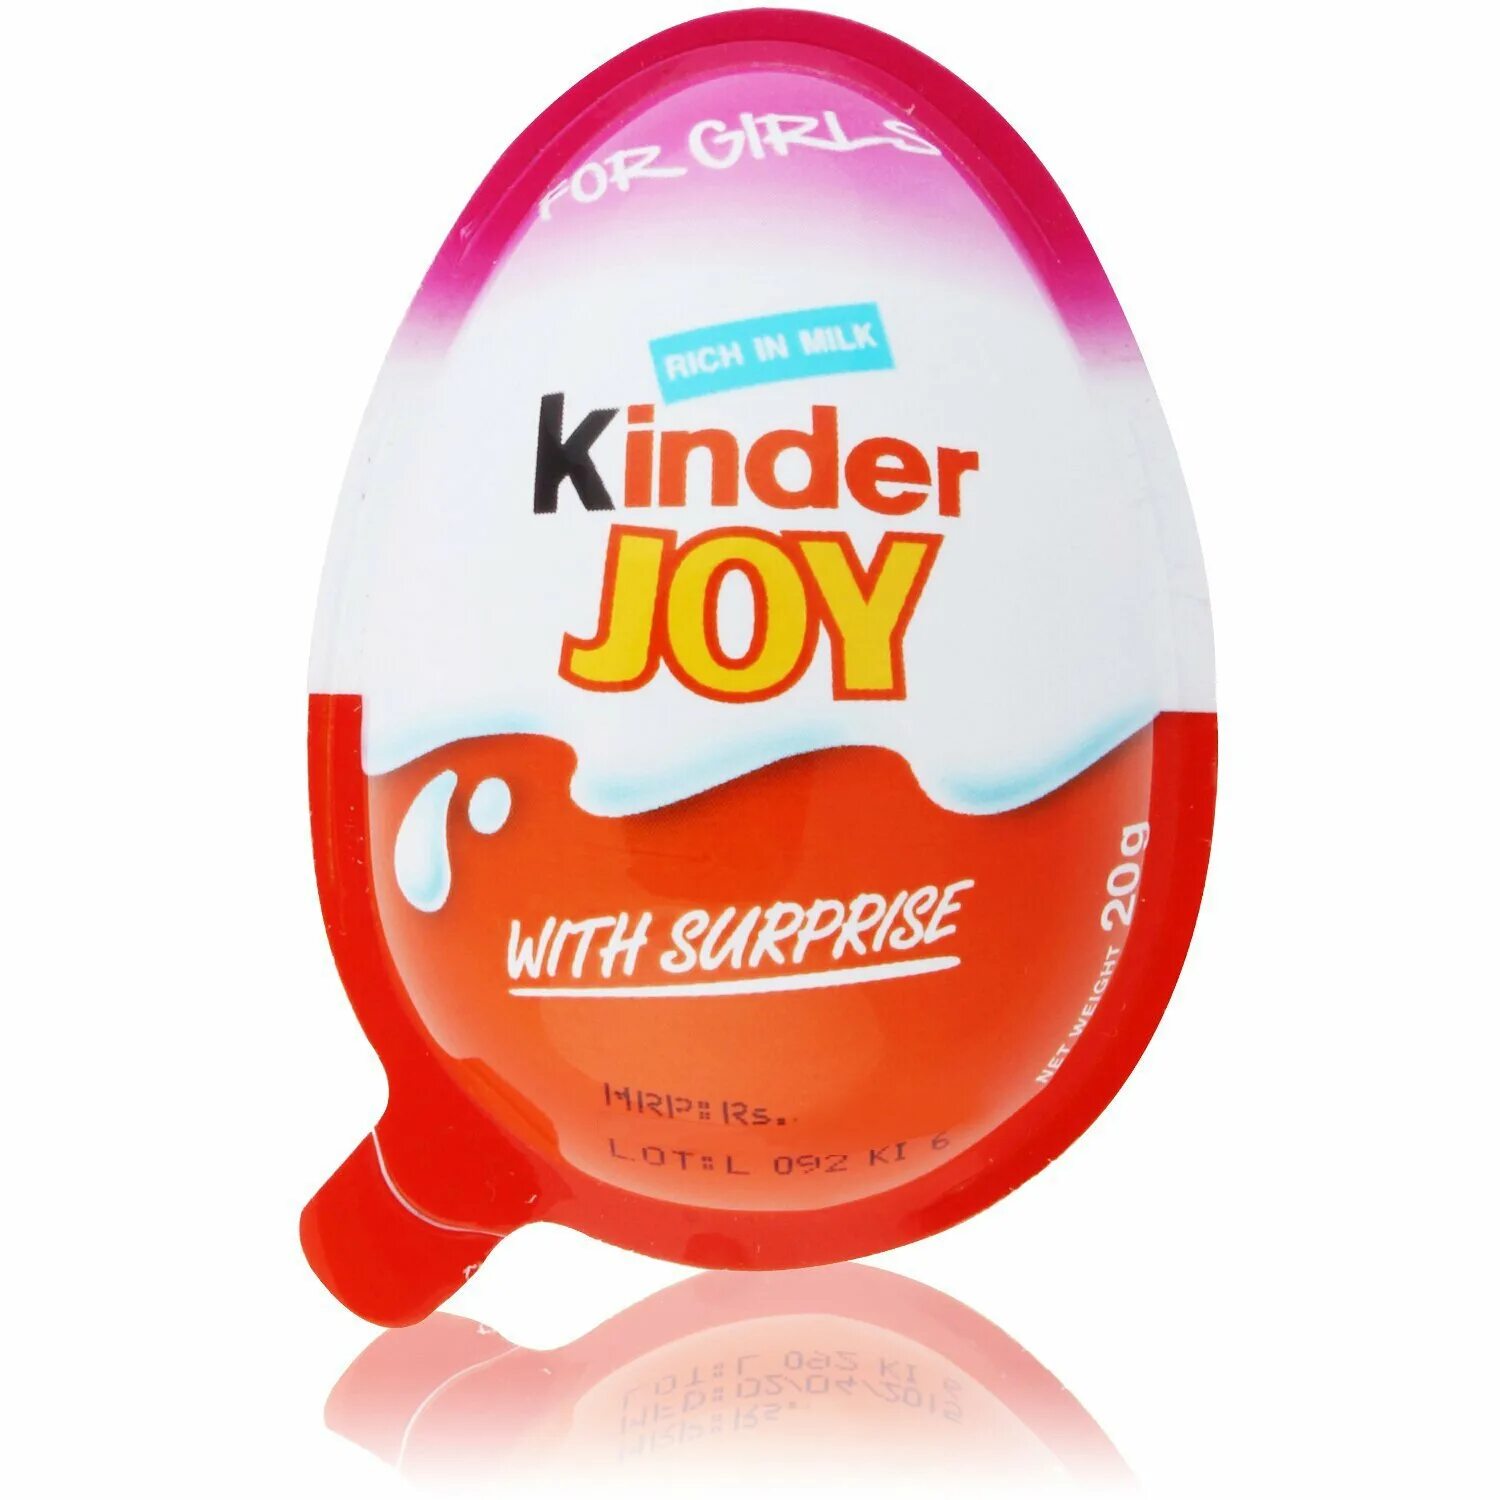 Kinder Joy kinder сюрприз. Яйцо Киндер Джой. Розовый Киндер Джой. Яйцо Киндер Джой для девочек. Киндер джой купить